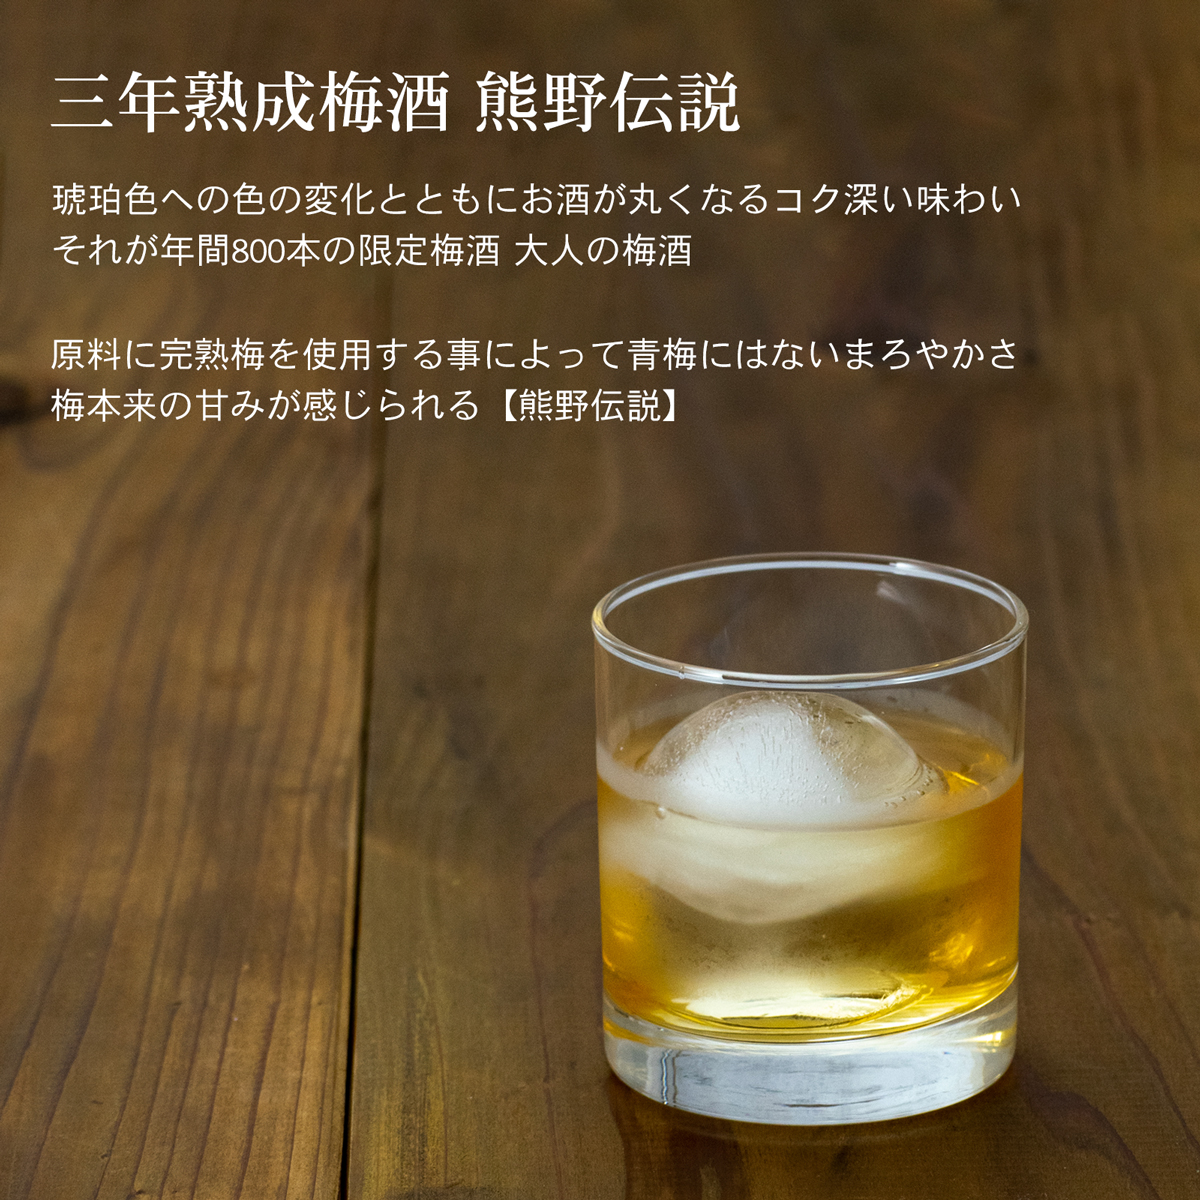 L499　幻の梅酒 熊野伝説 黒瓶・白瓶 セット 